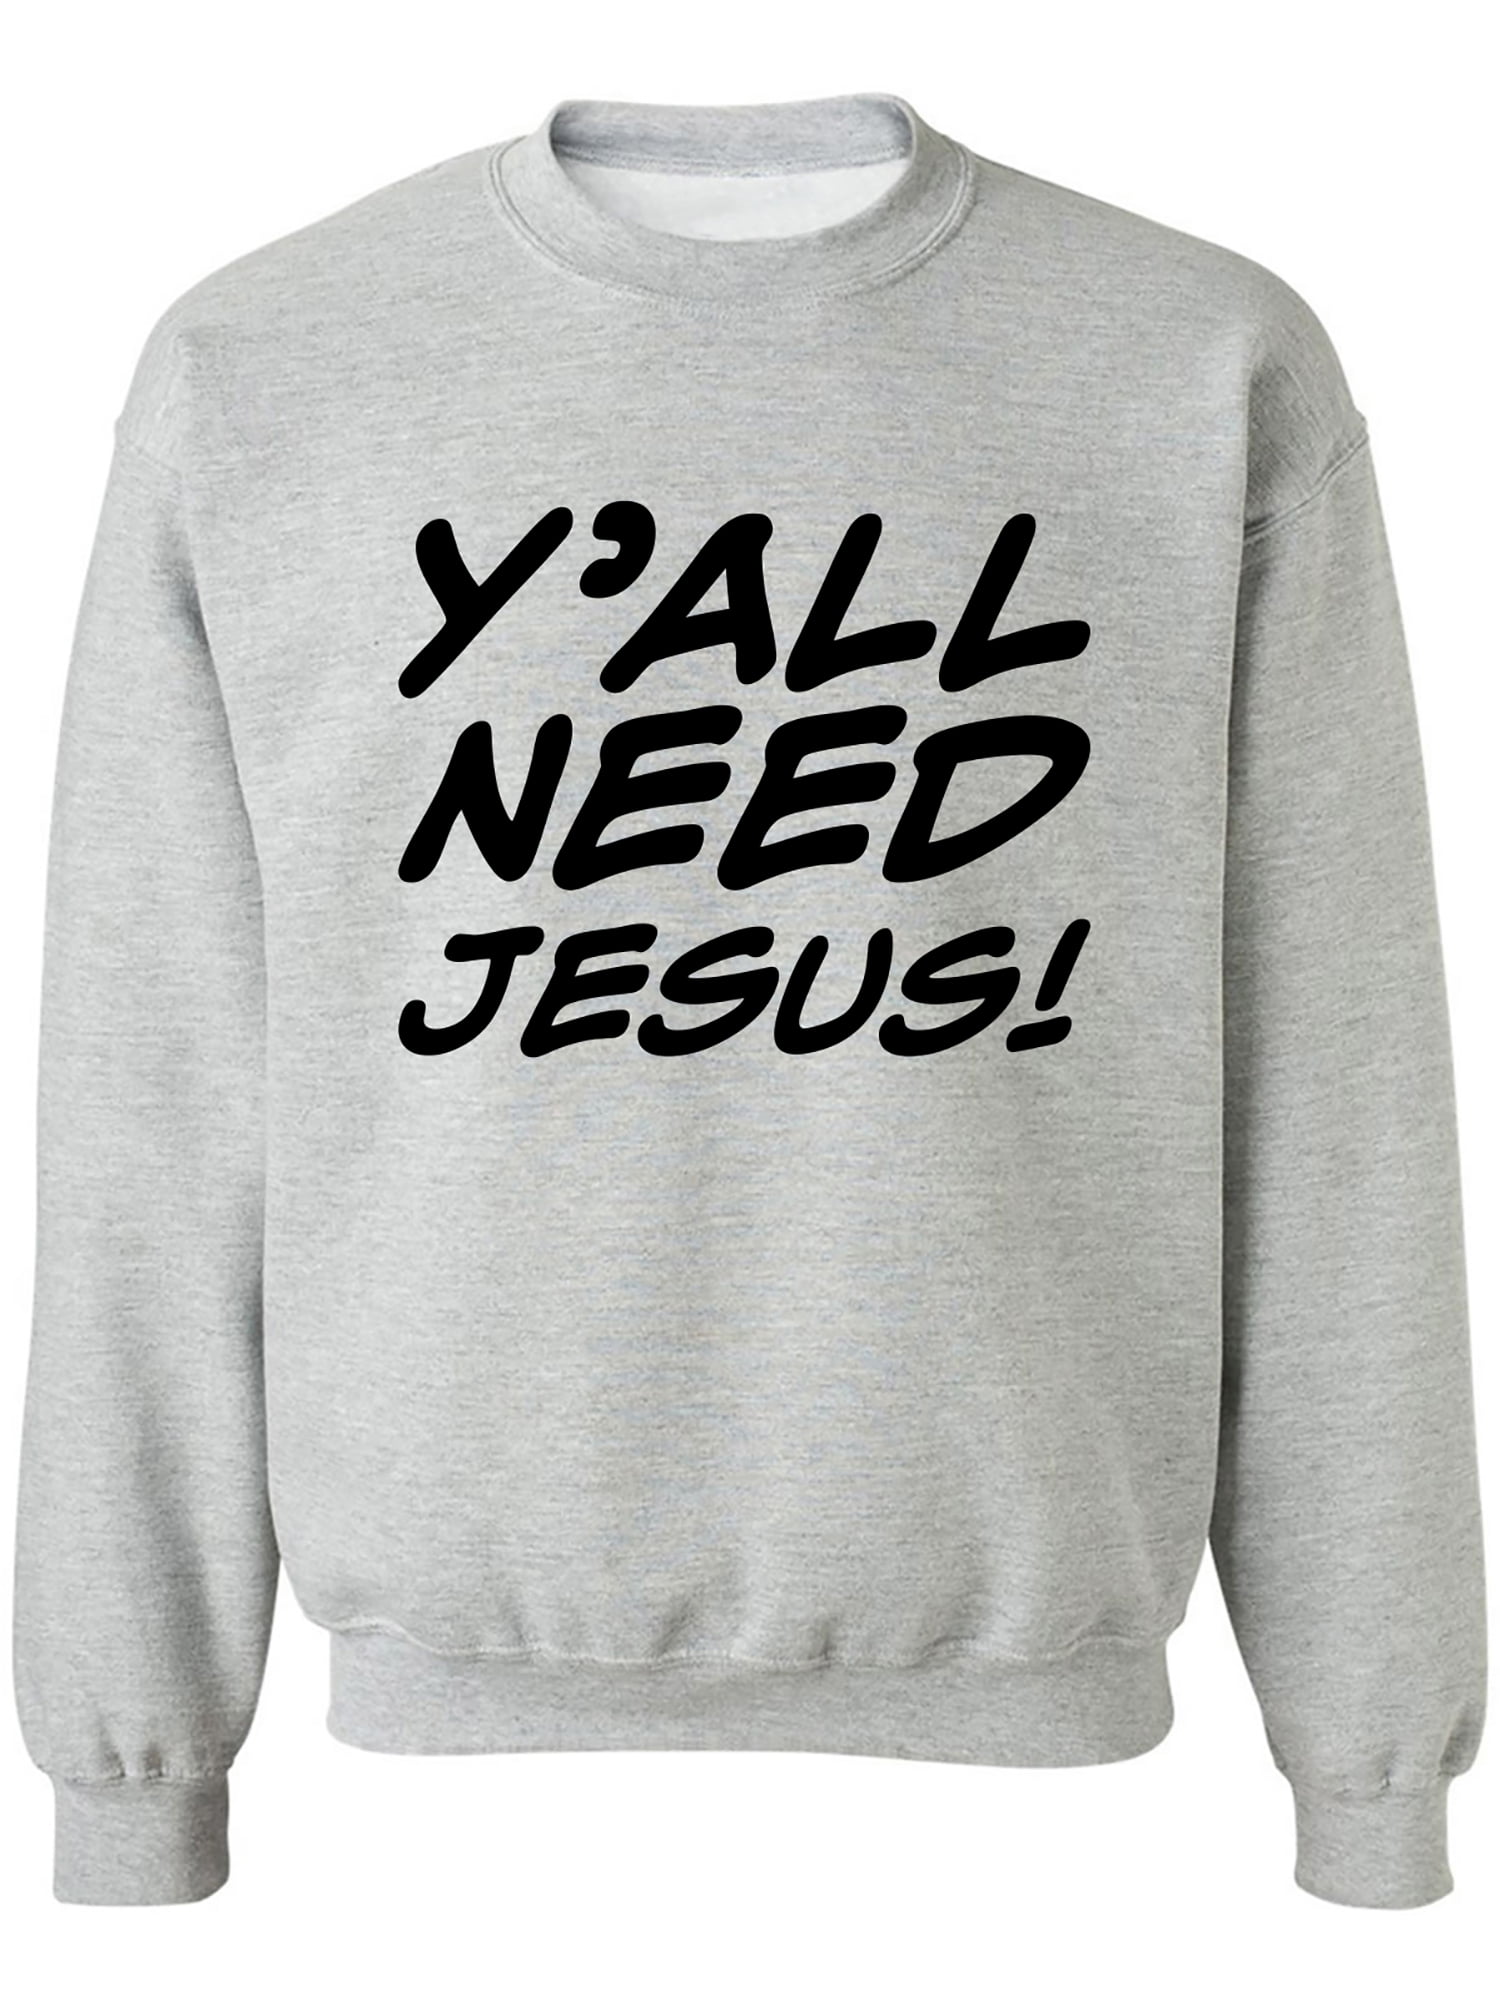 Y'ALL NEED JESUS! Crewneck Sweatshirt - Walmart.com